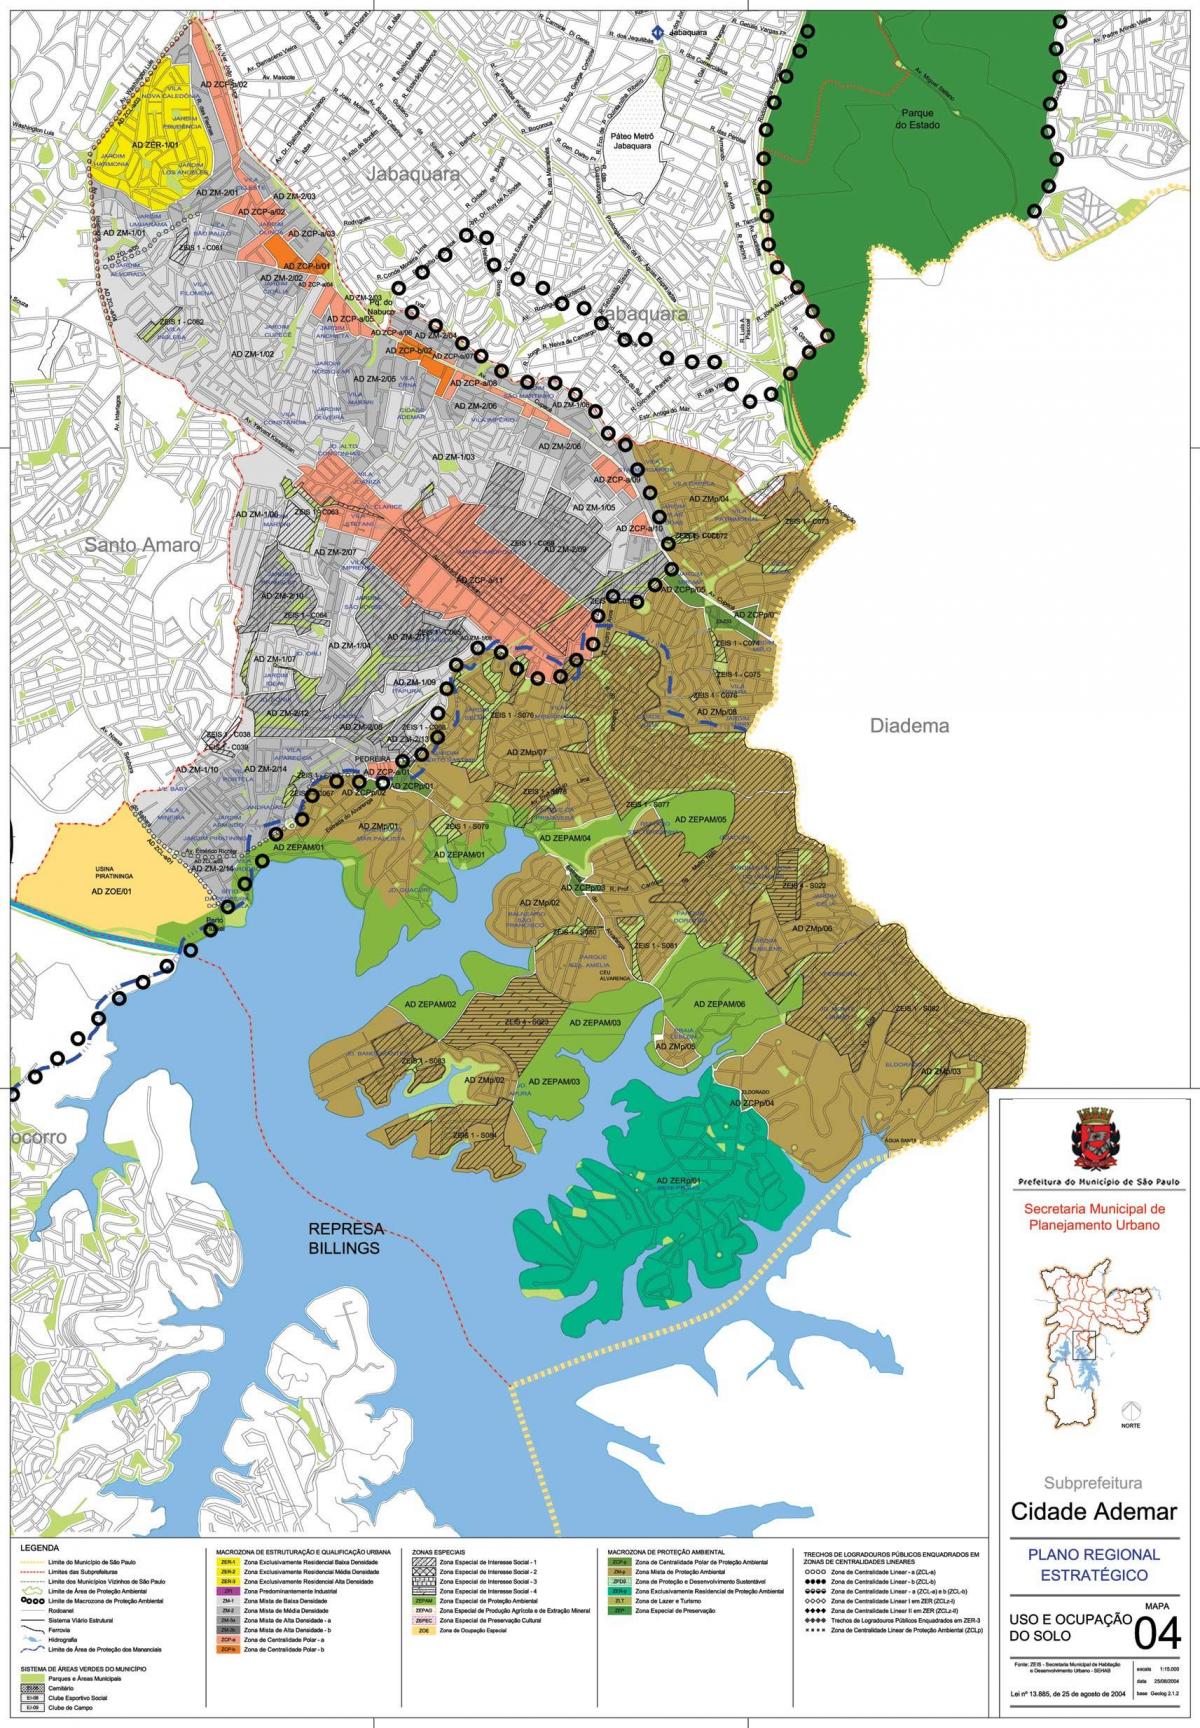 خريطة سيداد ادمار ساو باولو - الاحتلال التربة